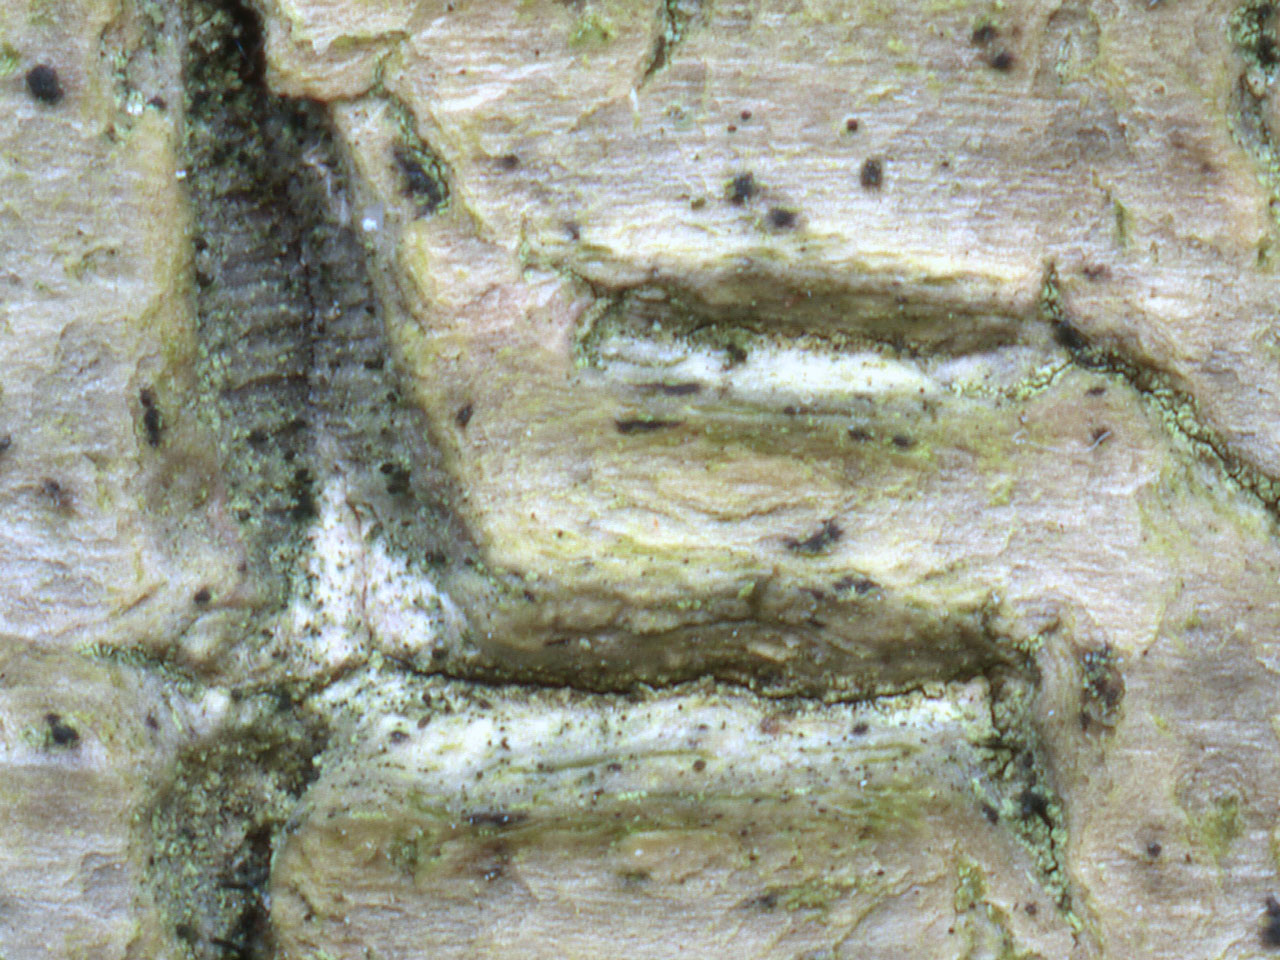 Calicium diploellum, Rushpole Wood, New Forest